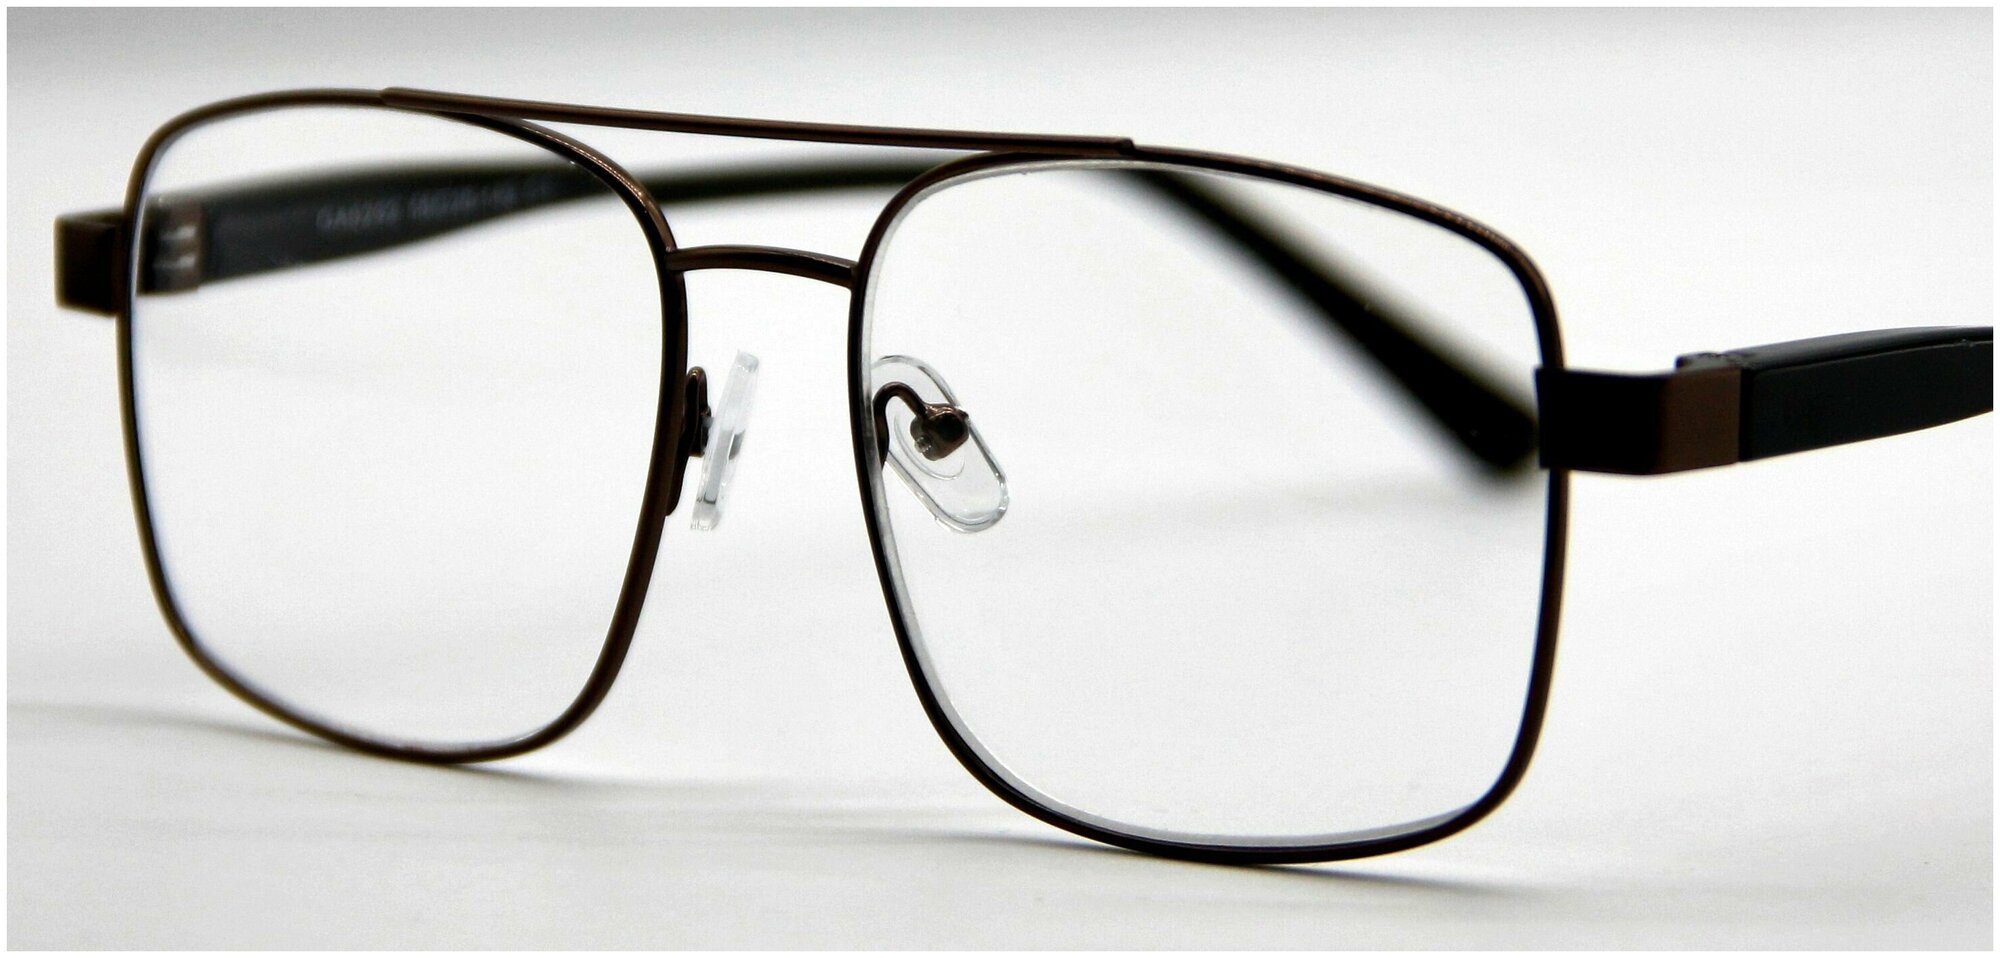 Готовые очки для зрения Marcello GA0292 C1 с диоптриями -2.5 /Мужские очки корректирующие/Флексовое крепление дужек/Оправа металл/Футляр в комплекте